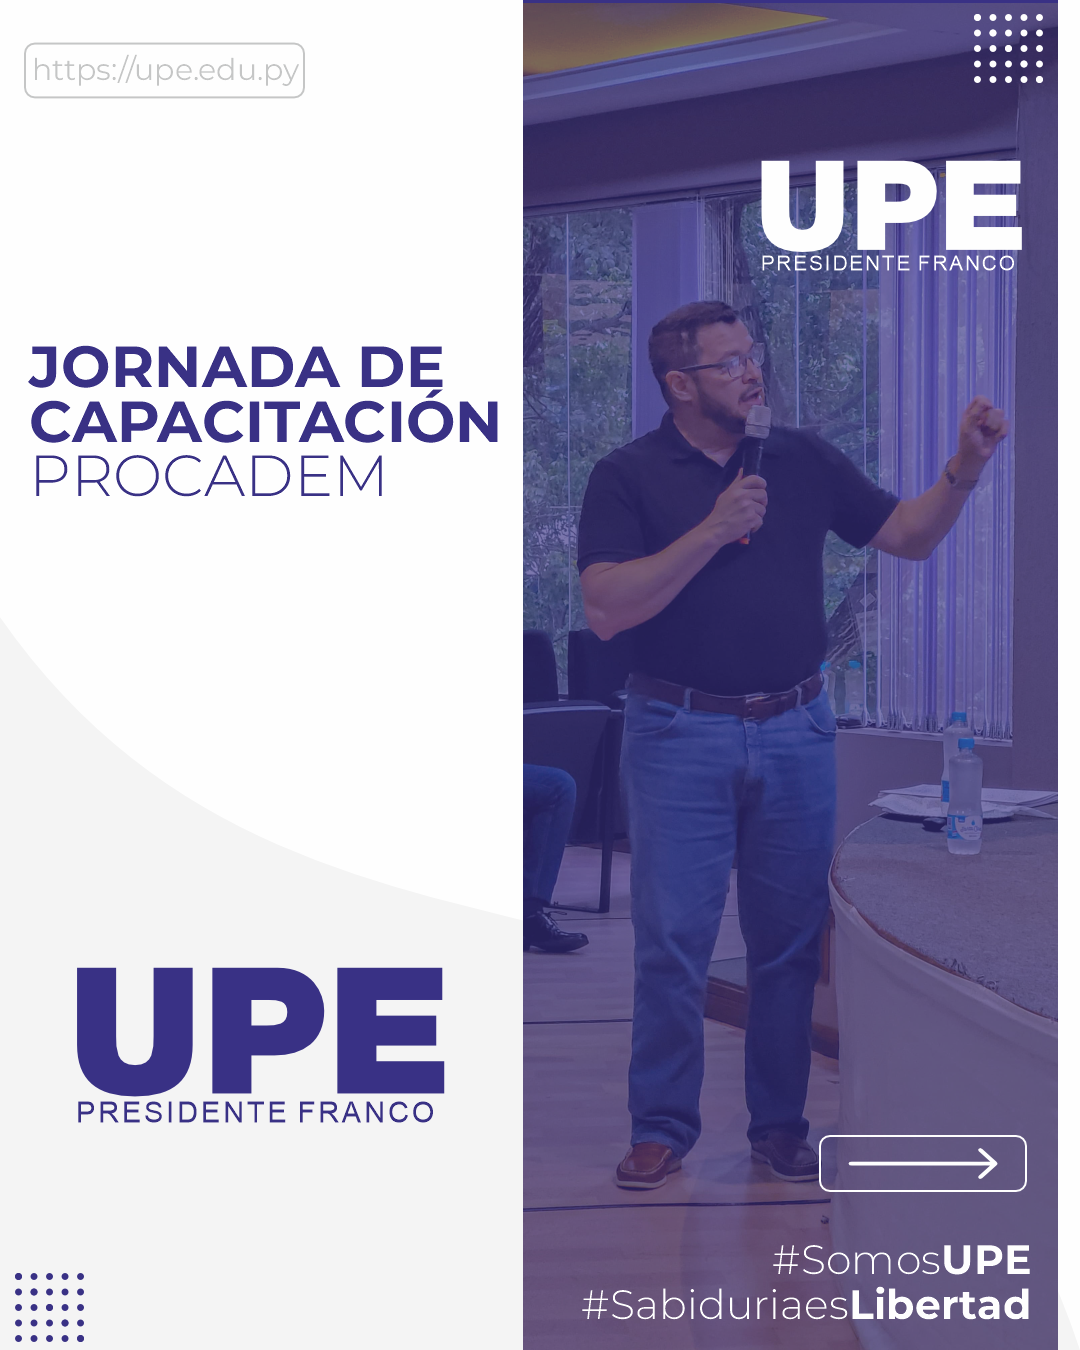 PROCADEM: Jornada de Capacitación en la UPE